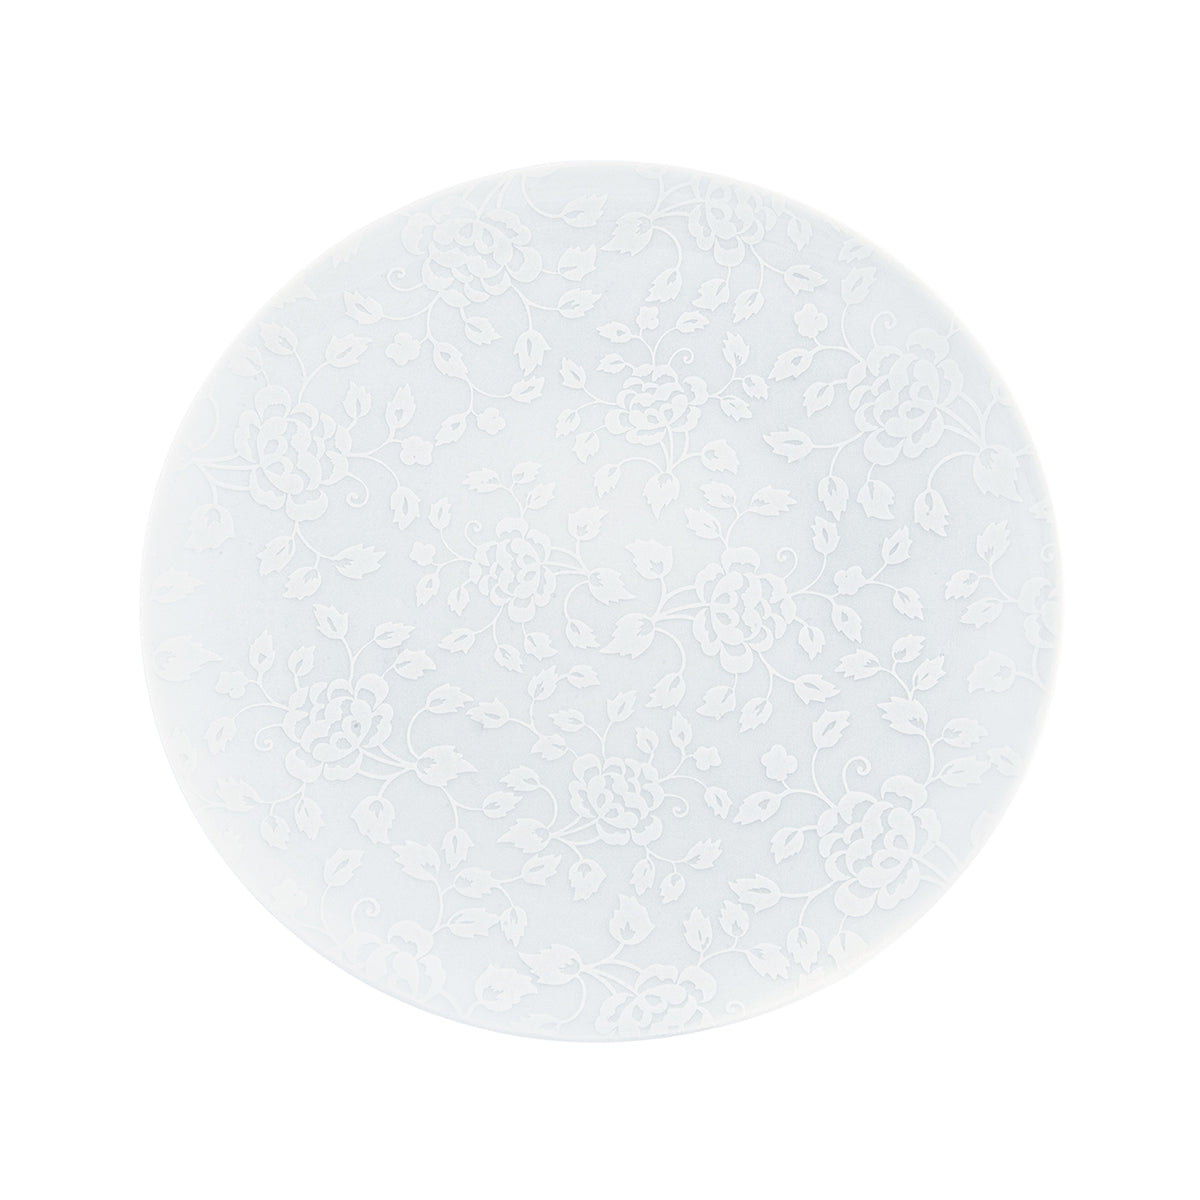 THISTLES white on white - Dinner plate